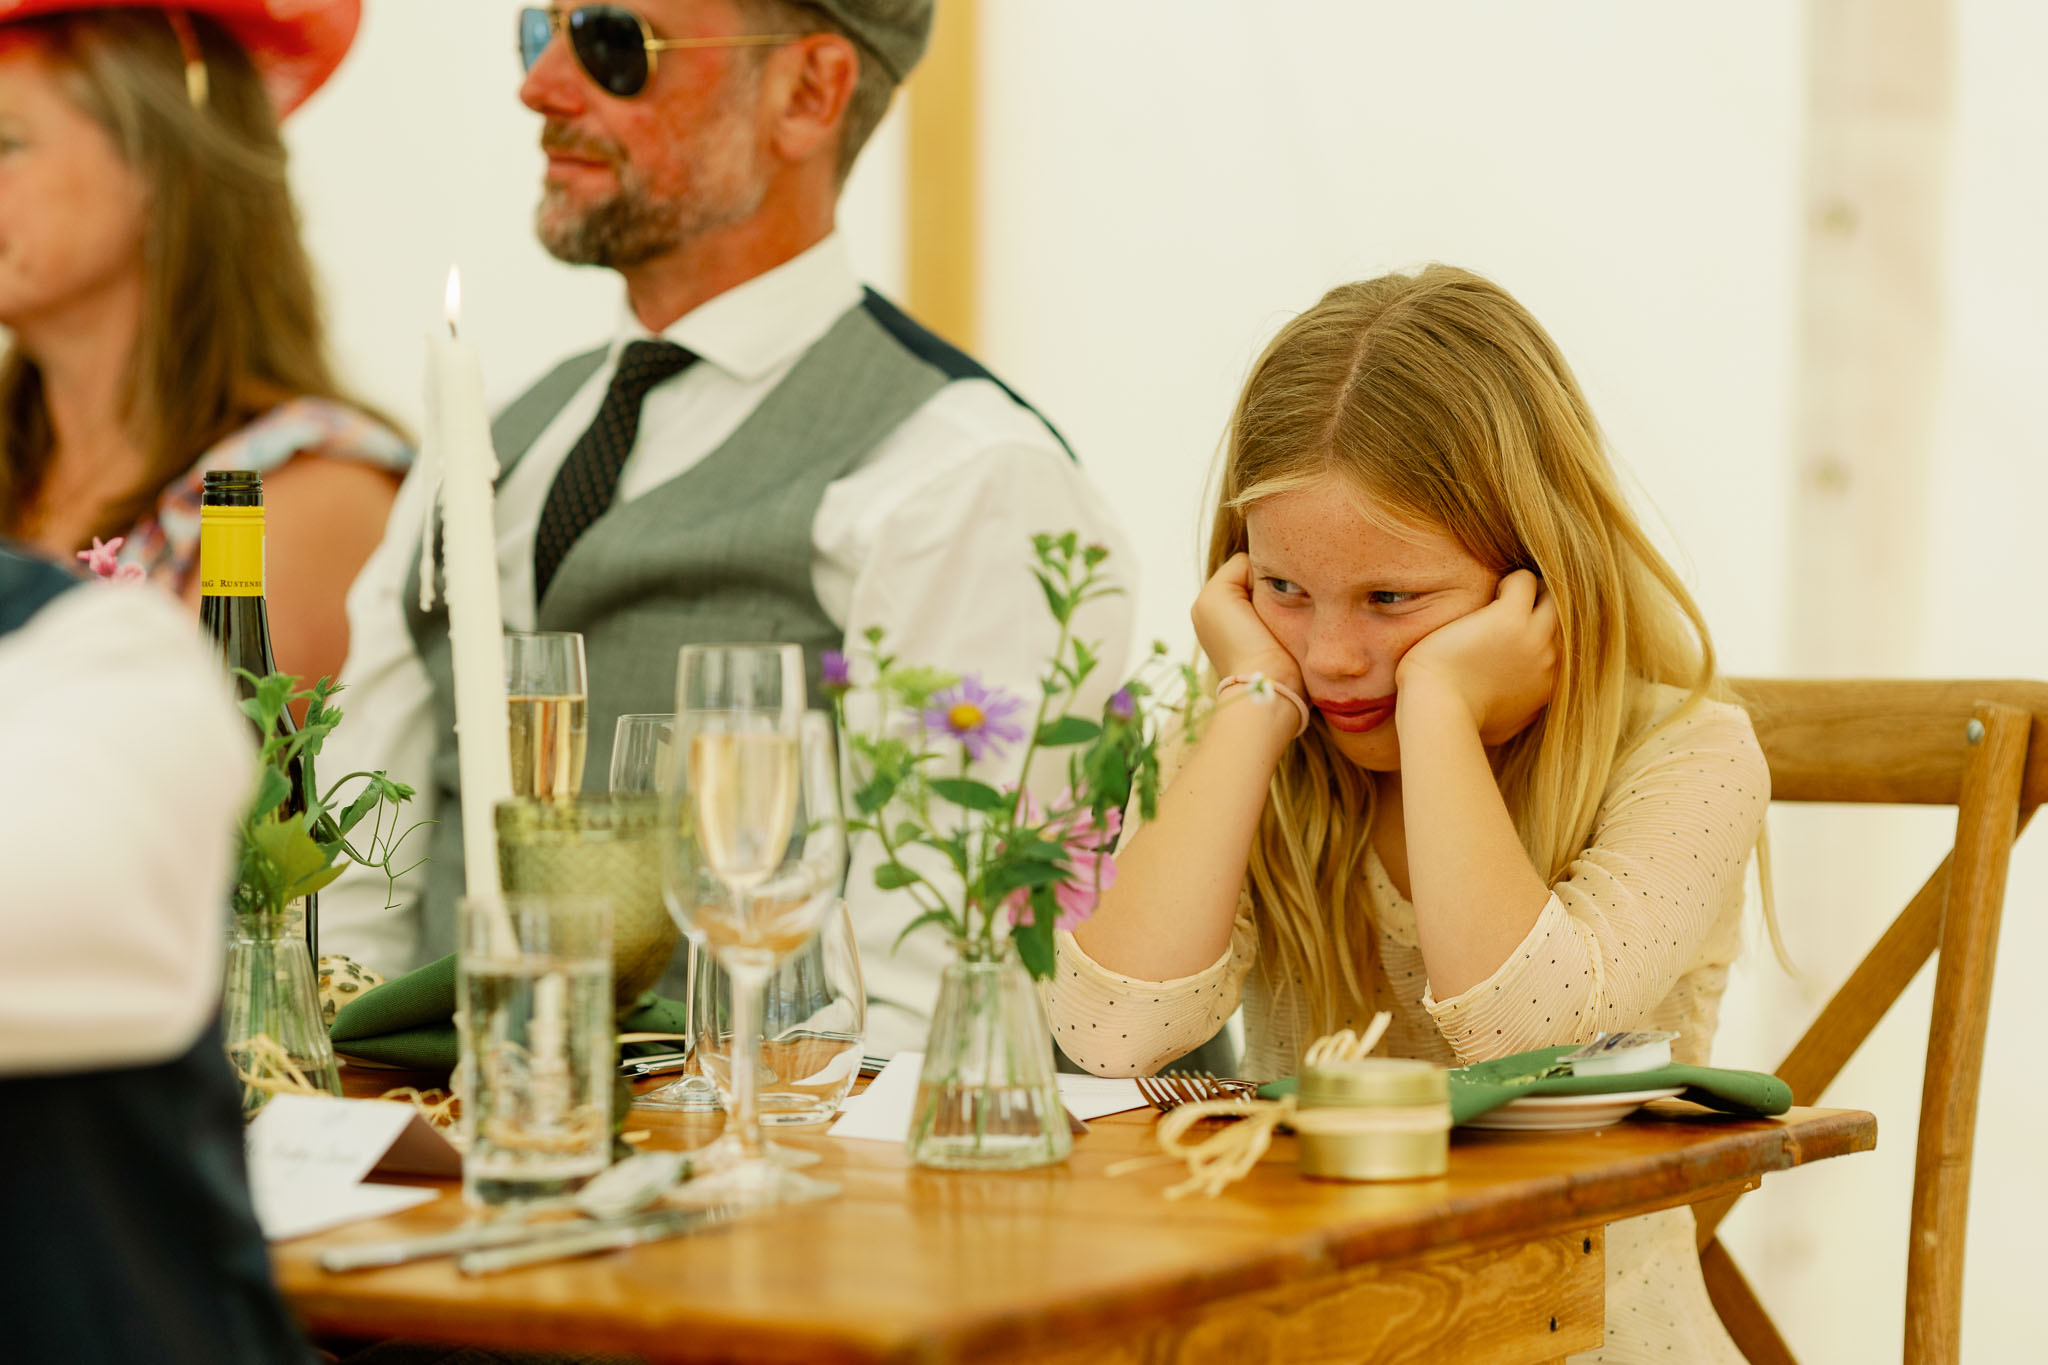 Children at Weddings 